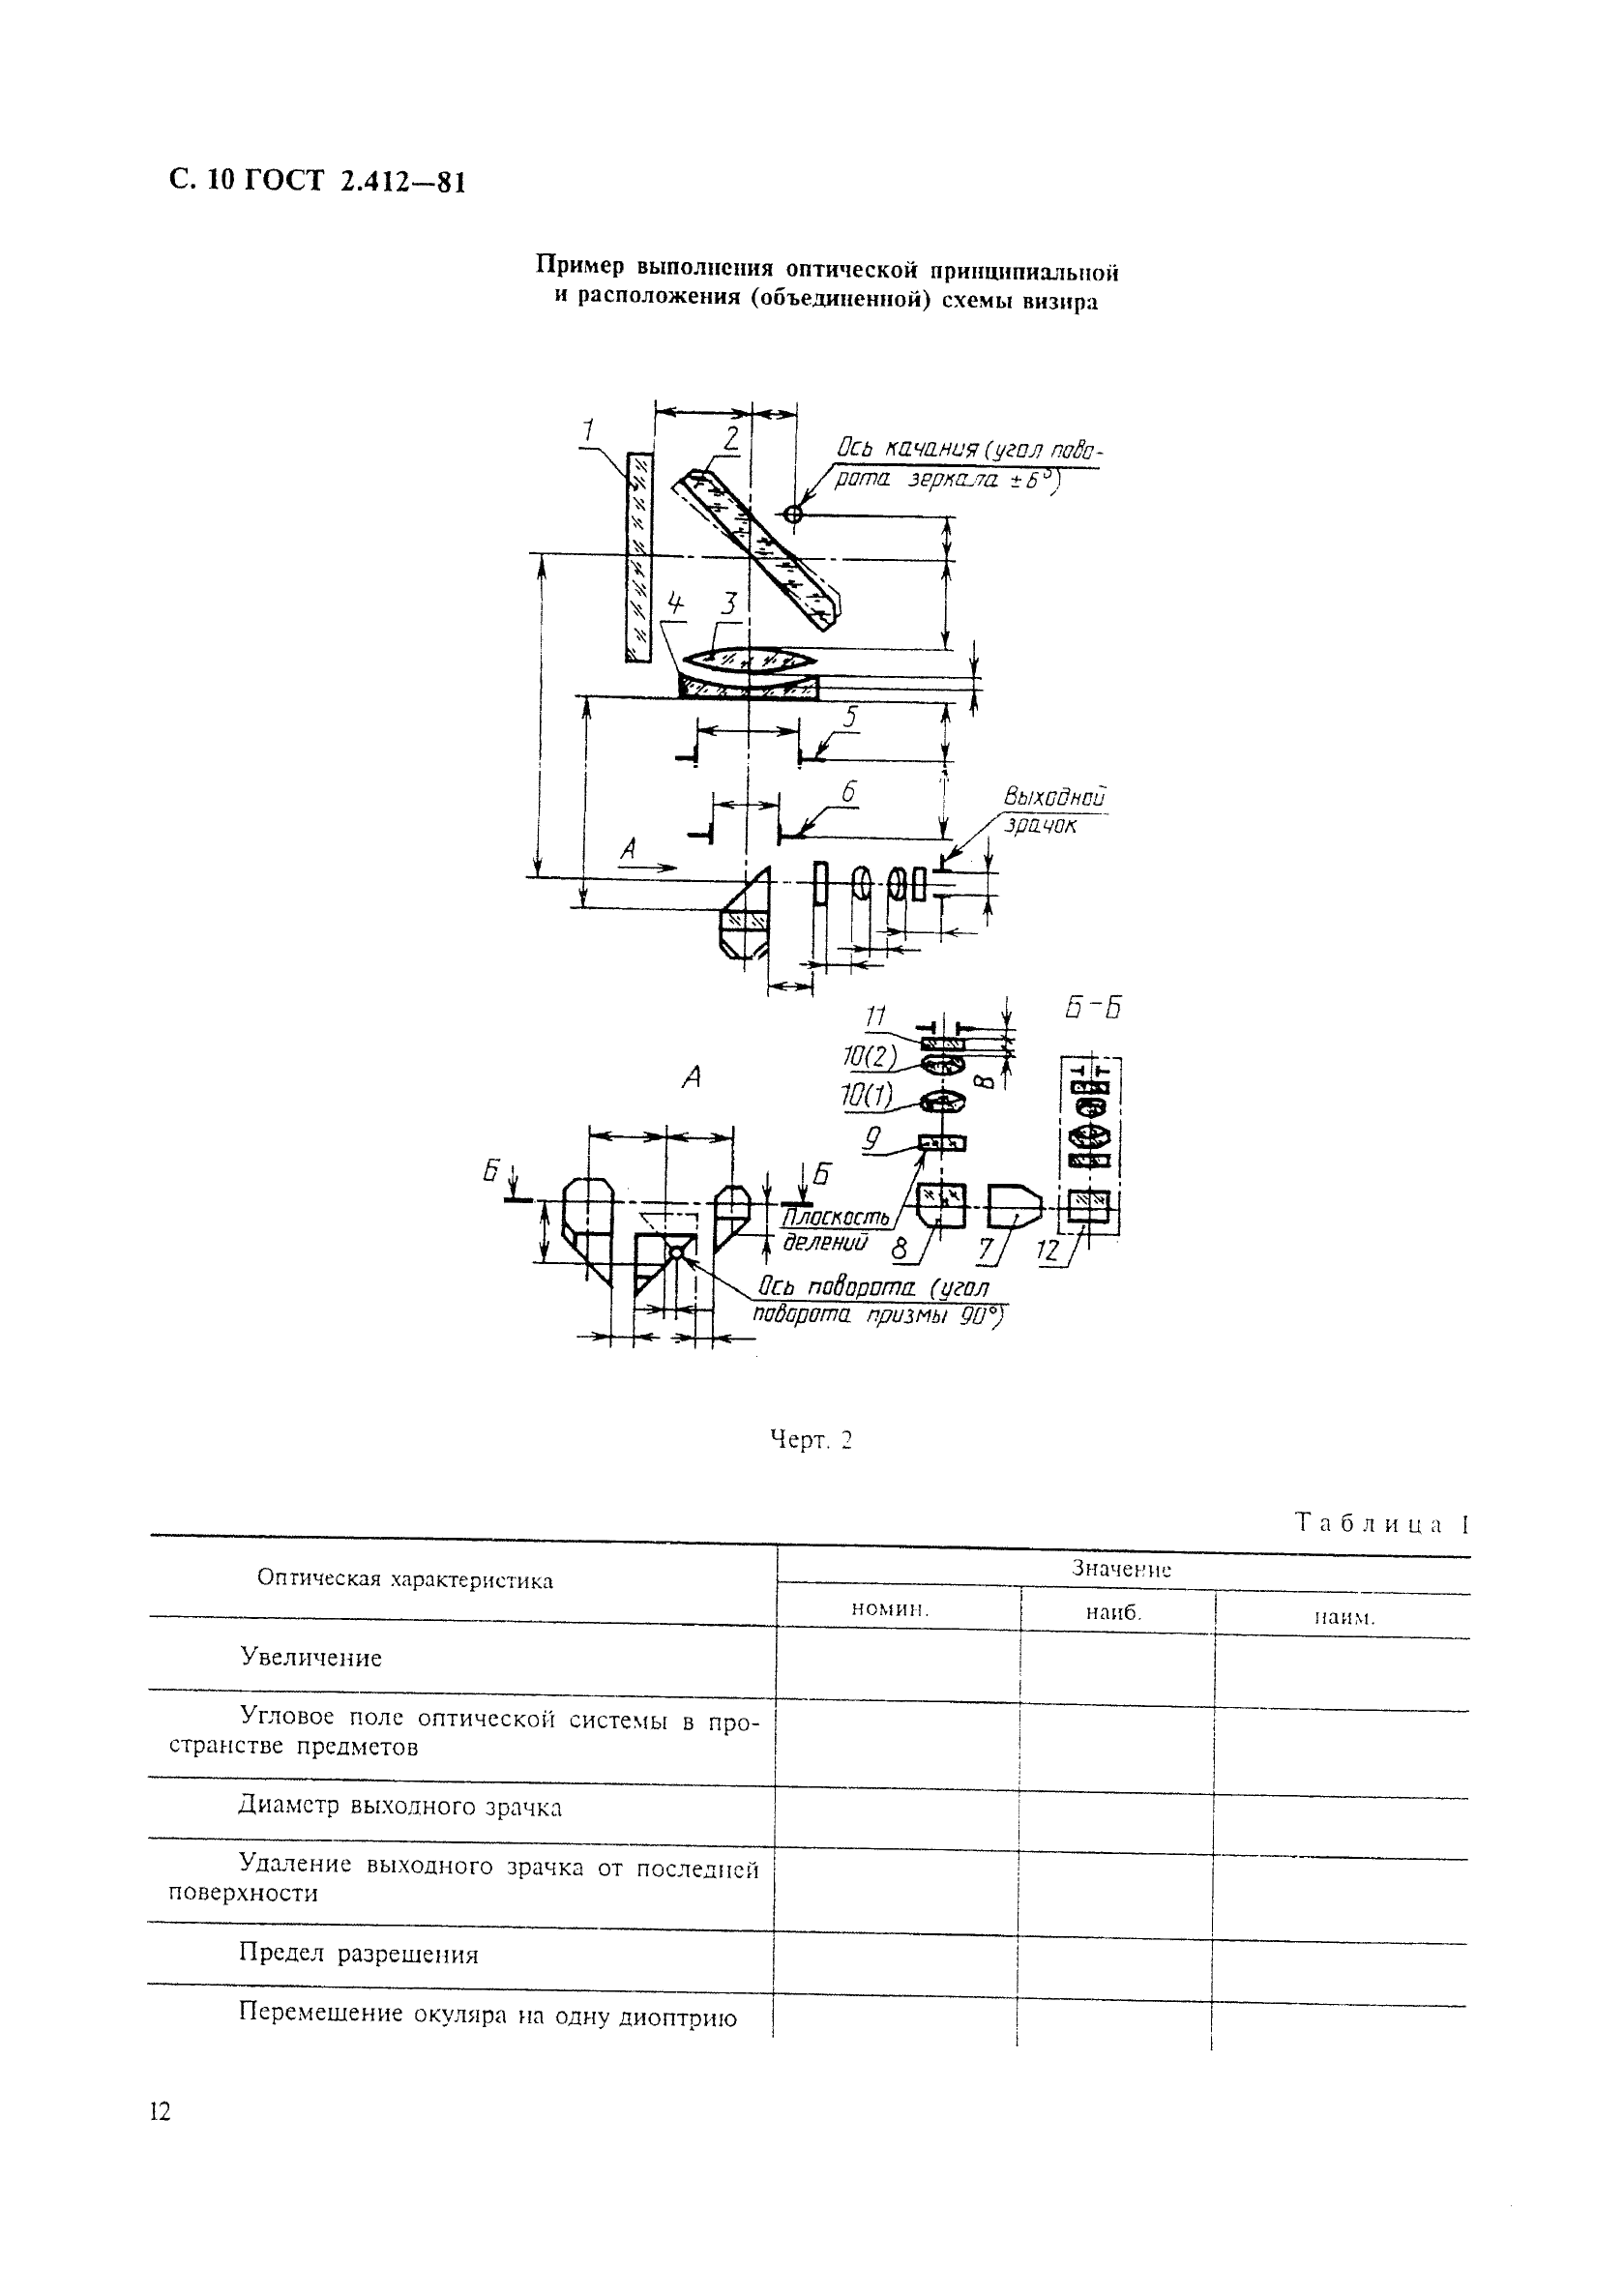 ГОСТ 2.412-81 Единая система конструкторской документации. Правила выполнения чертежей и схем оптических изделий (фото 12 из 14)